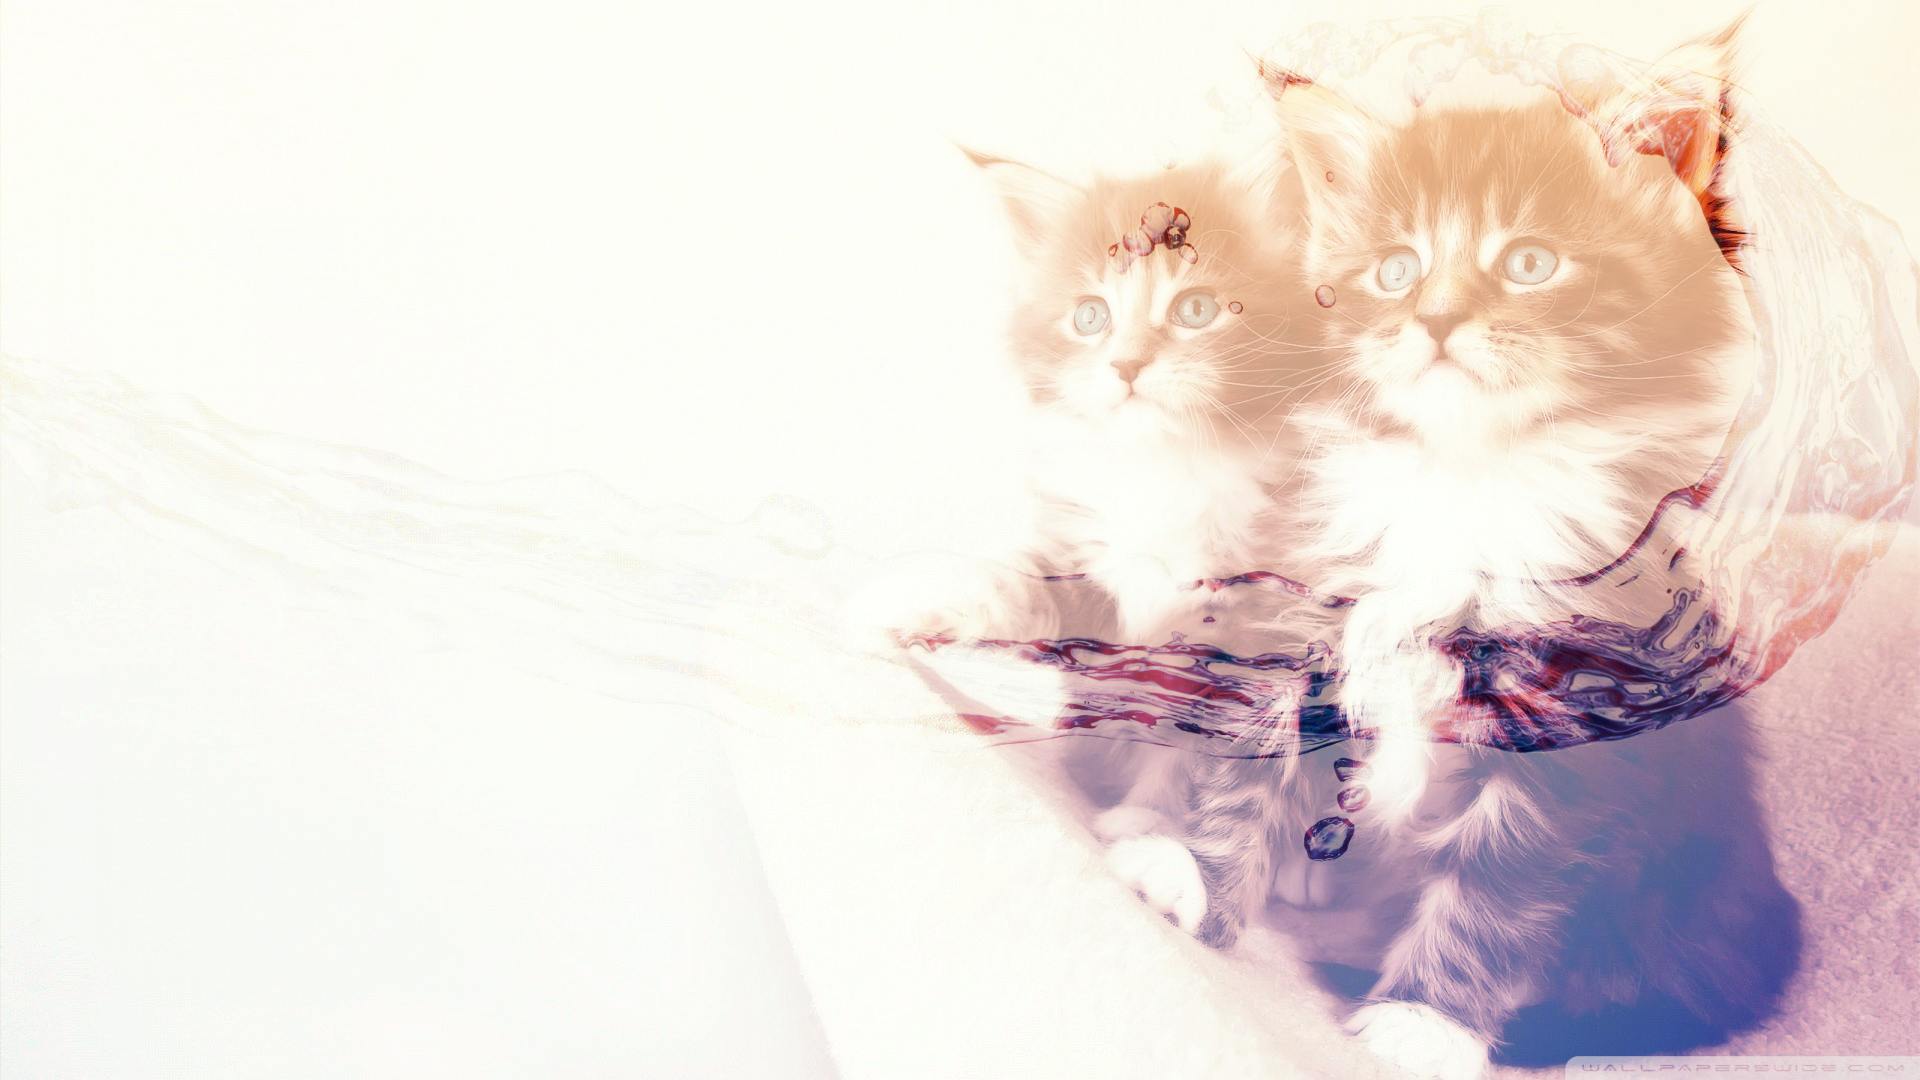 Hdの壁紙 かわいい動物 ネコの無料の写真素材